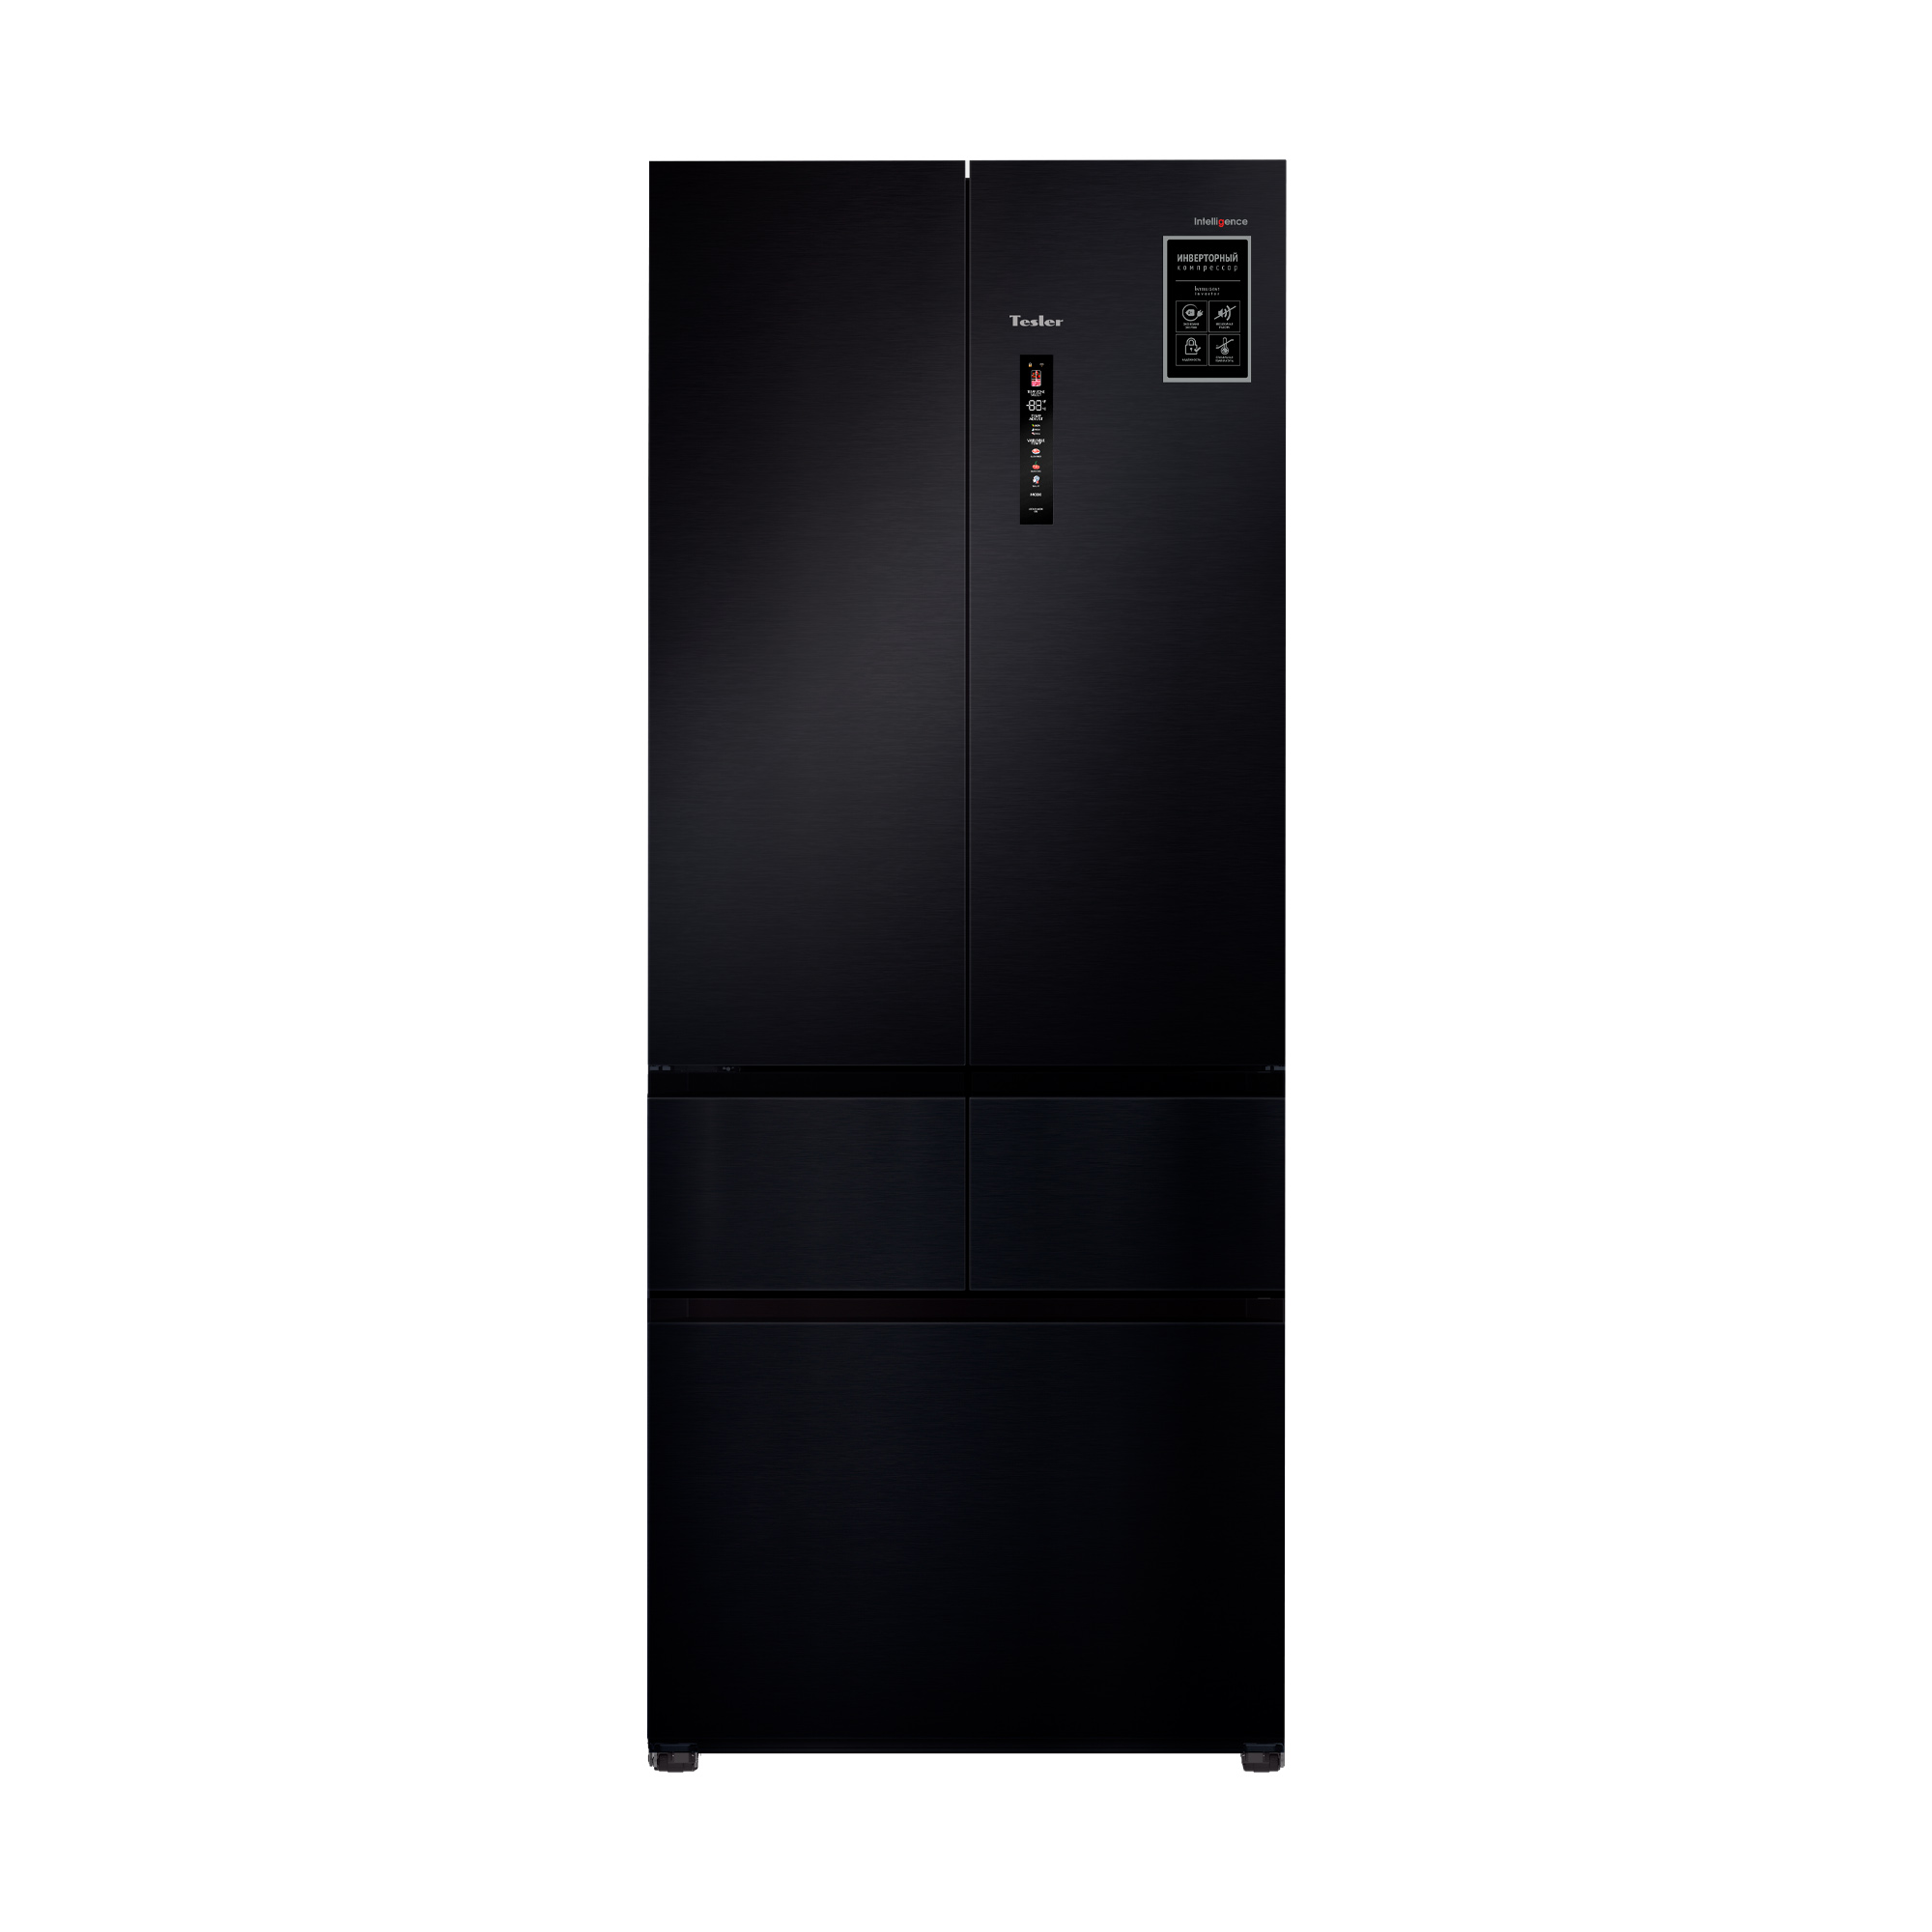 Холодильник TESLER RFD-427BI черный джип полиция на дистанционном управлении работает от батареек микс